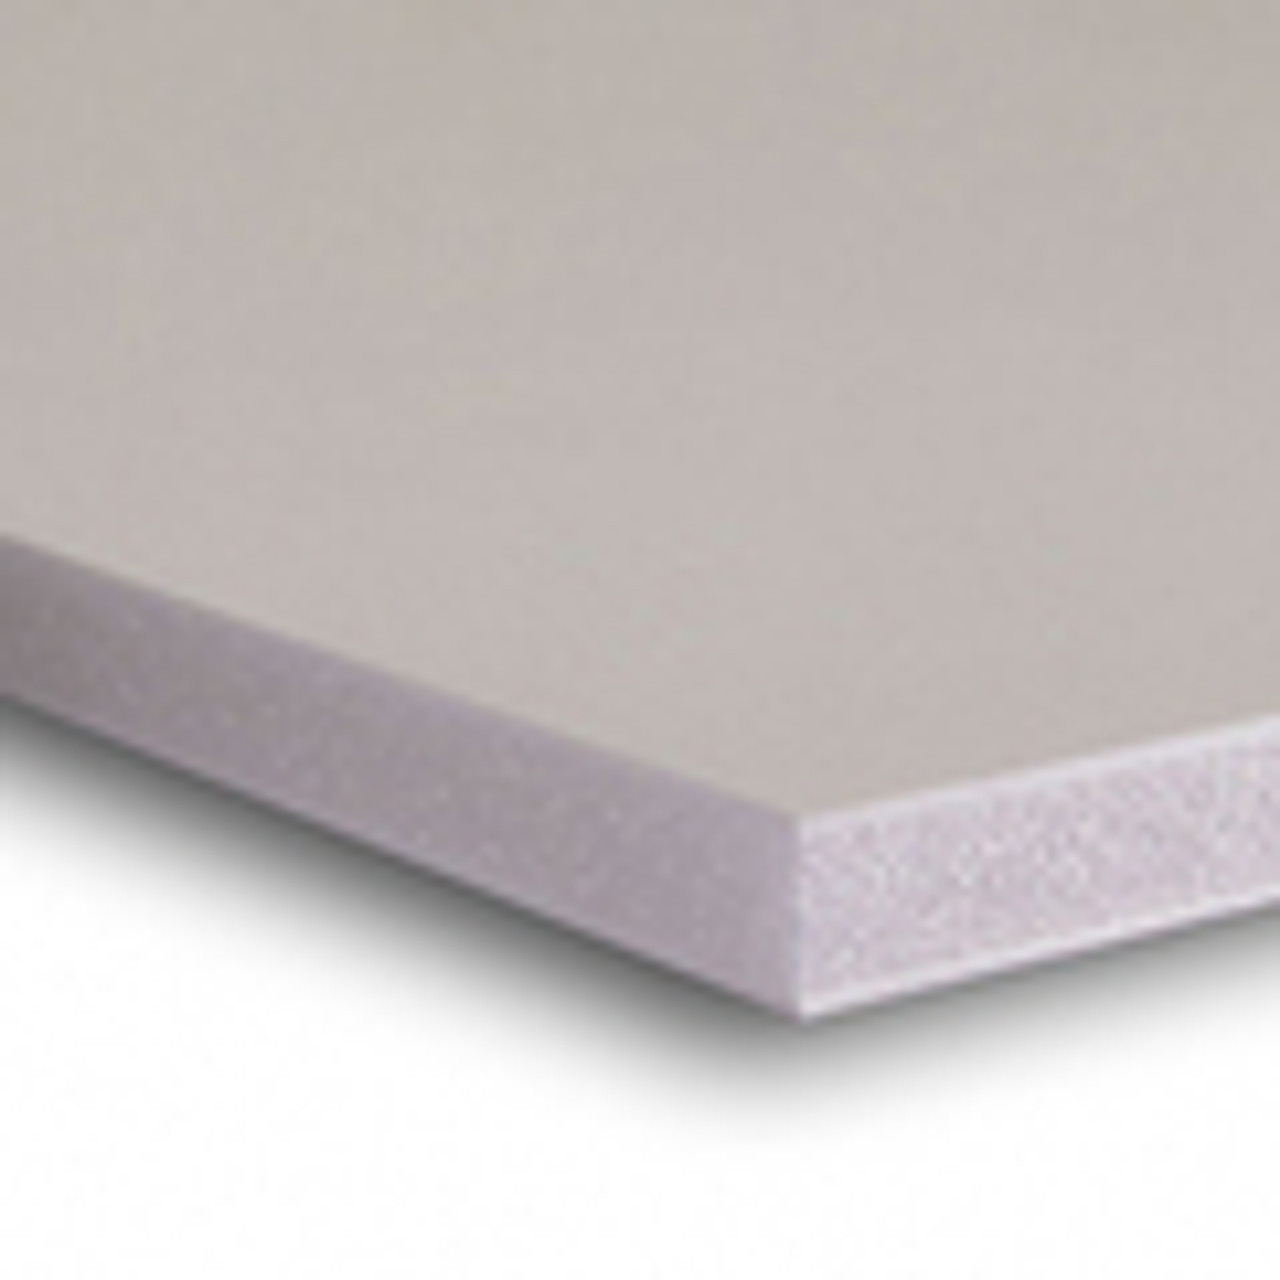 Foam Core Backing Board 3/16 White 1 Side Self Adhesive 16x20- 10